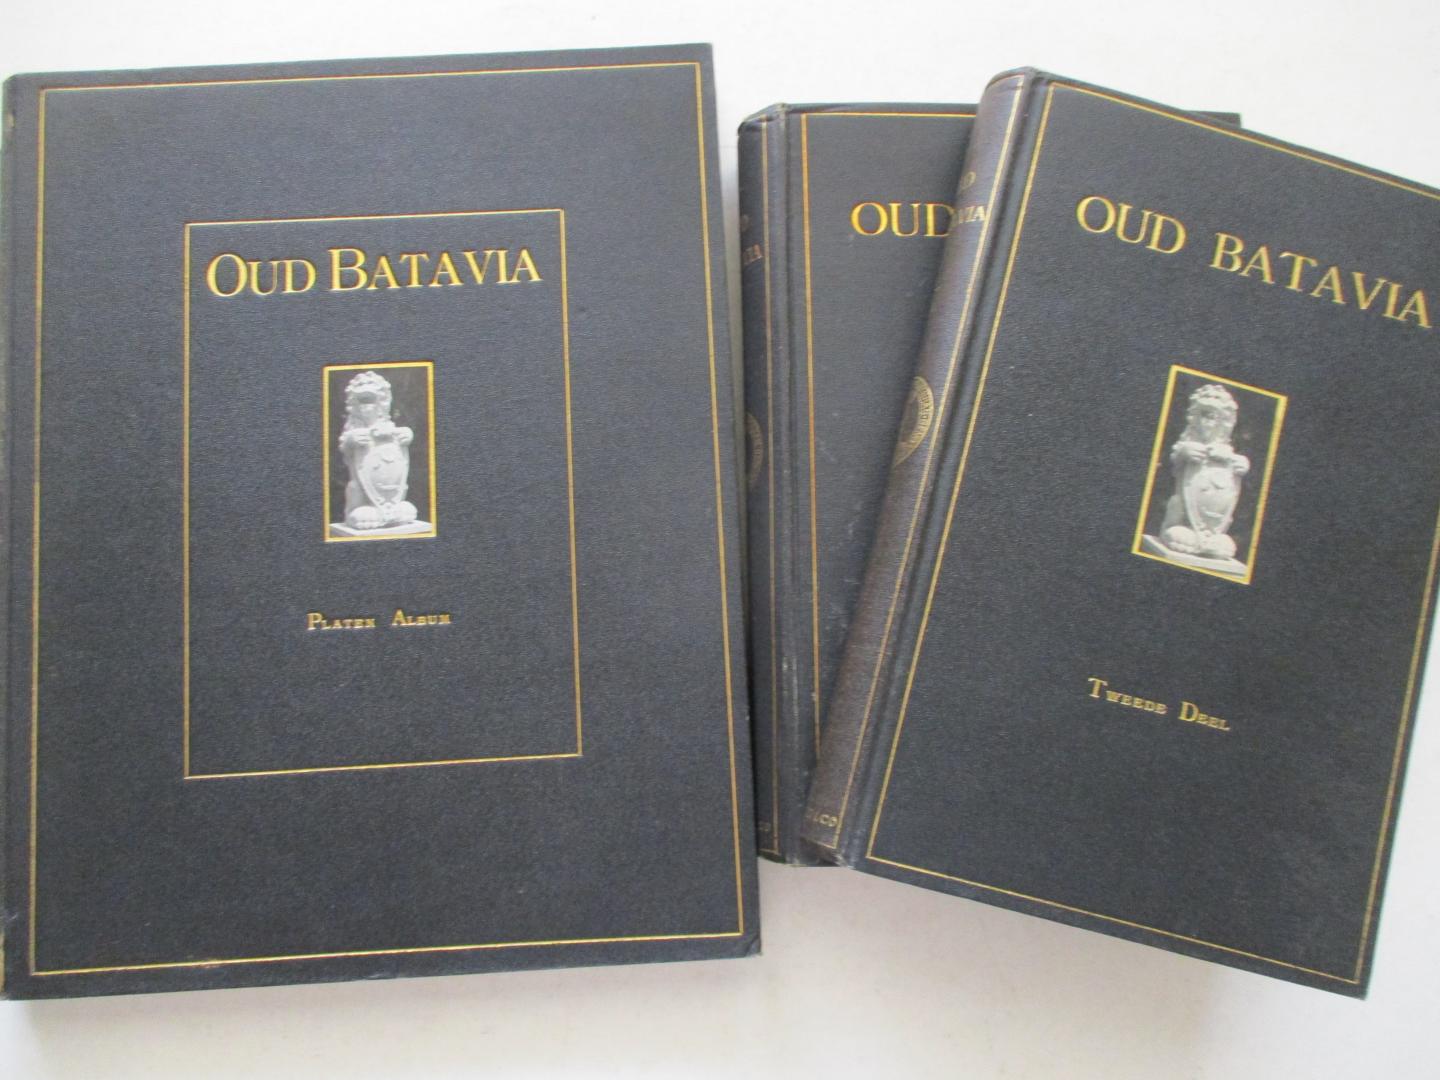 HAAN, F. de - Oud Batavia. Gedenkboek uitg.door het Bataviaasch Genootschap van Kunsten en Wetenschappen naar aanleiding van het driehonderdjarig bestaan der stad in 1919.